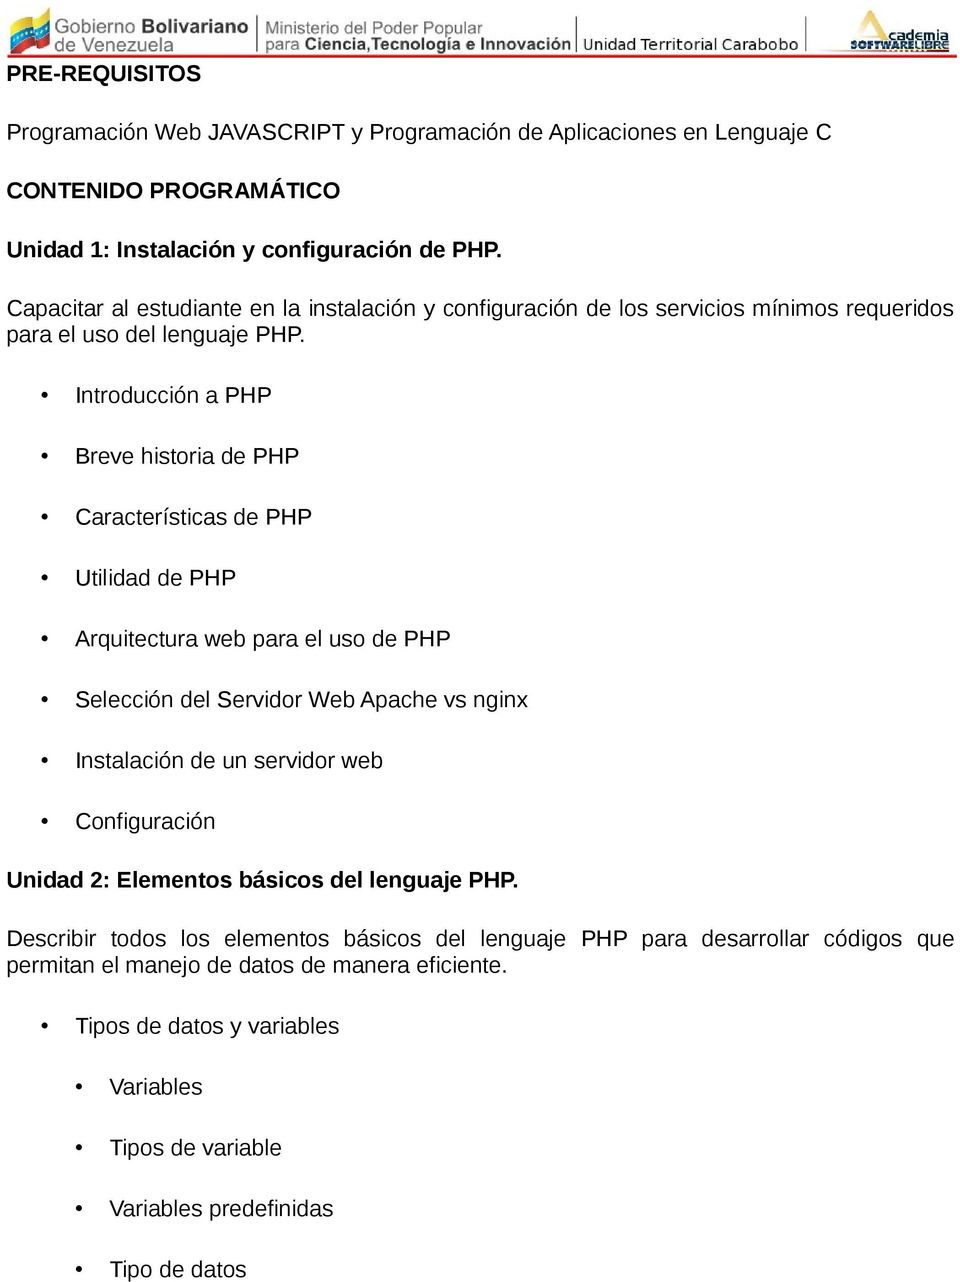 Introducción a PHP Breve historia de PHP Características de PHP Utilidad de PHP Arquitectura web para el uso de PHP Selección del Servidor Web Apache vs nginx Instalación de un servidor